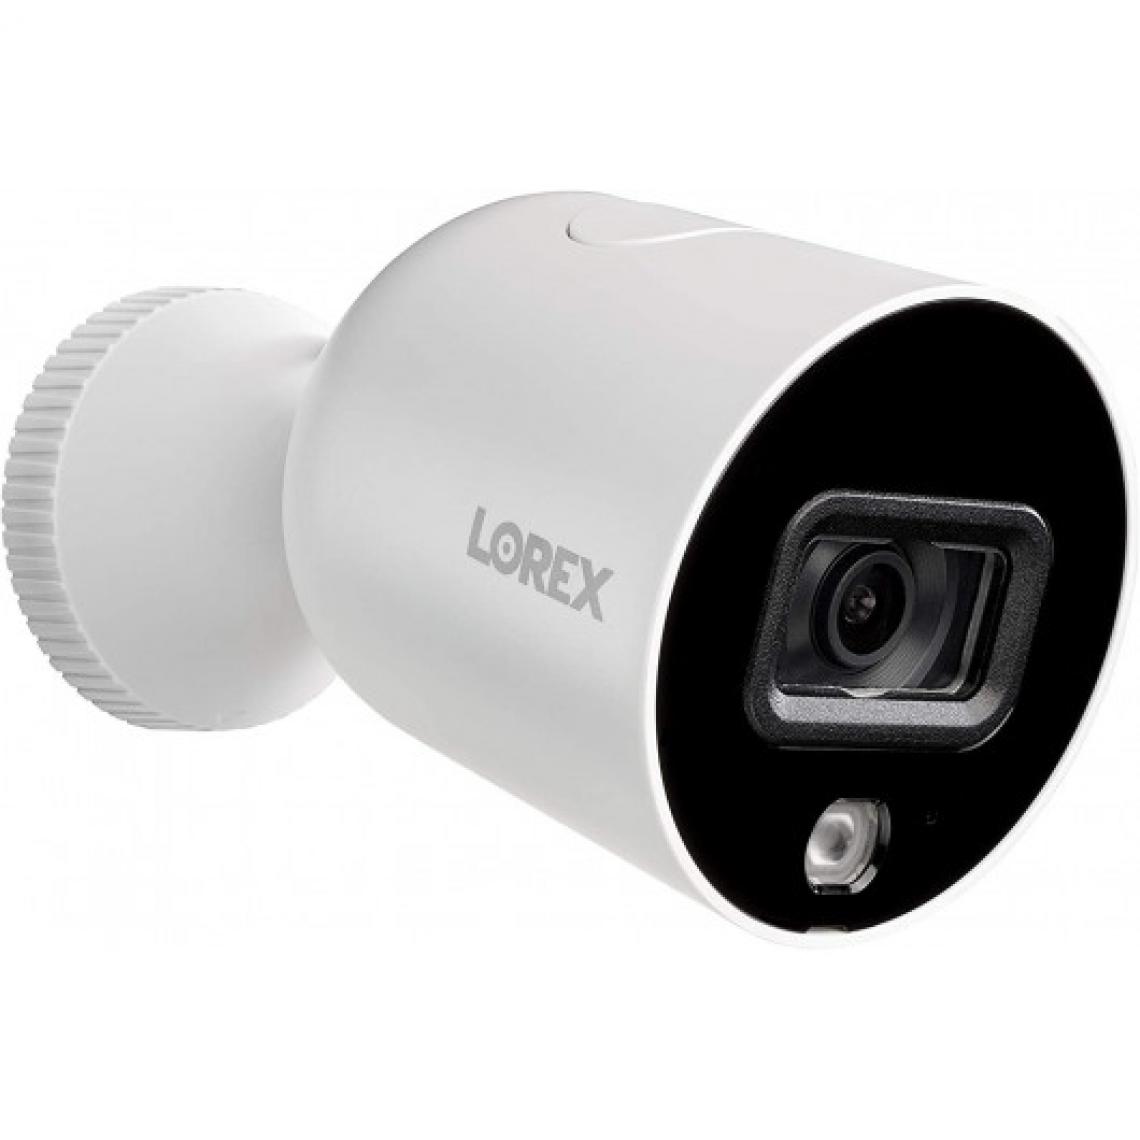 Ofs Selection - Lorex L871T8E-2CA2-E, un moniteur et deux caméras - Accessoires sécurité connectée